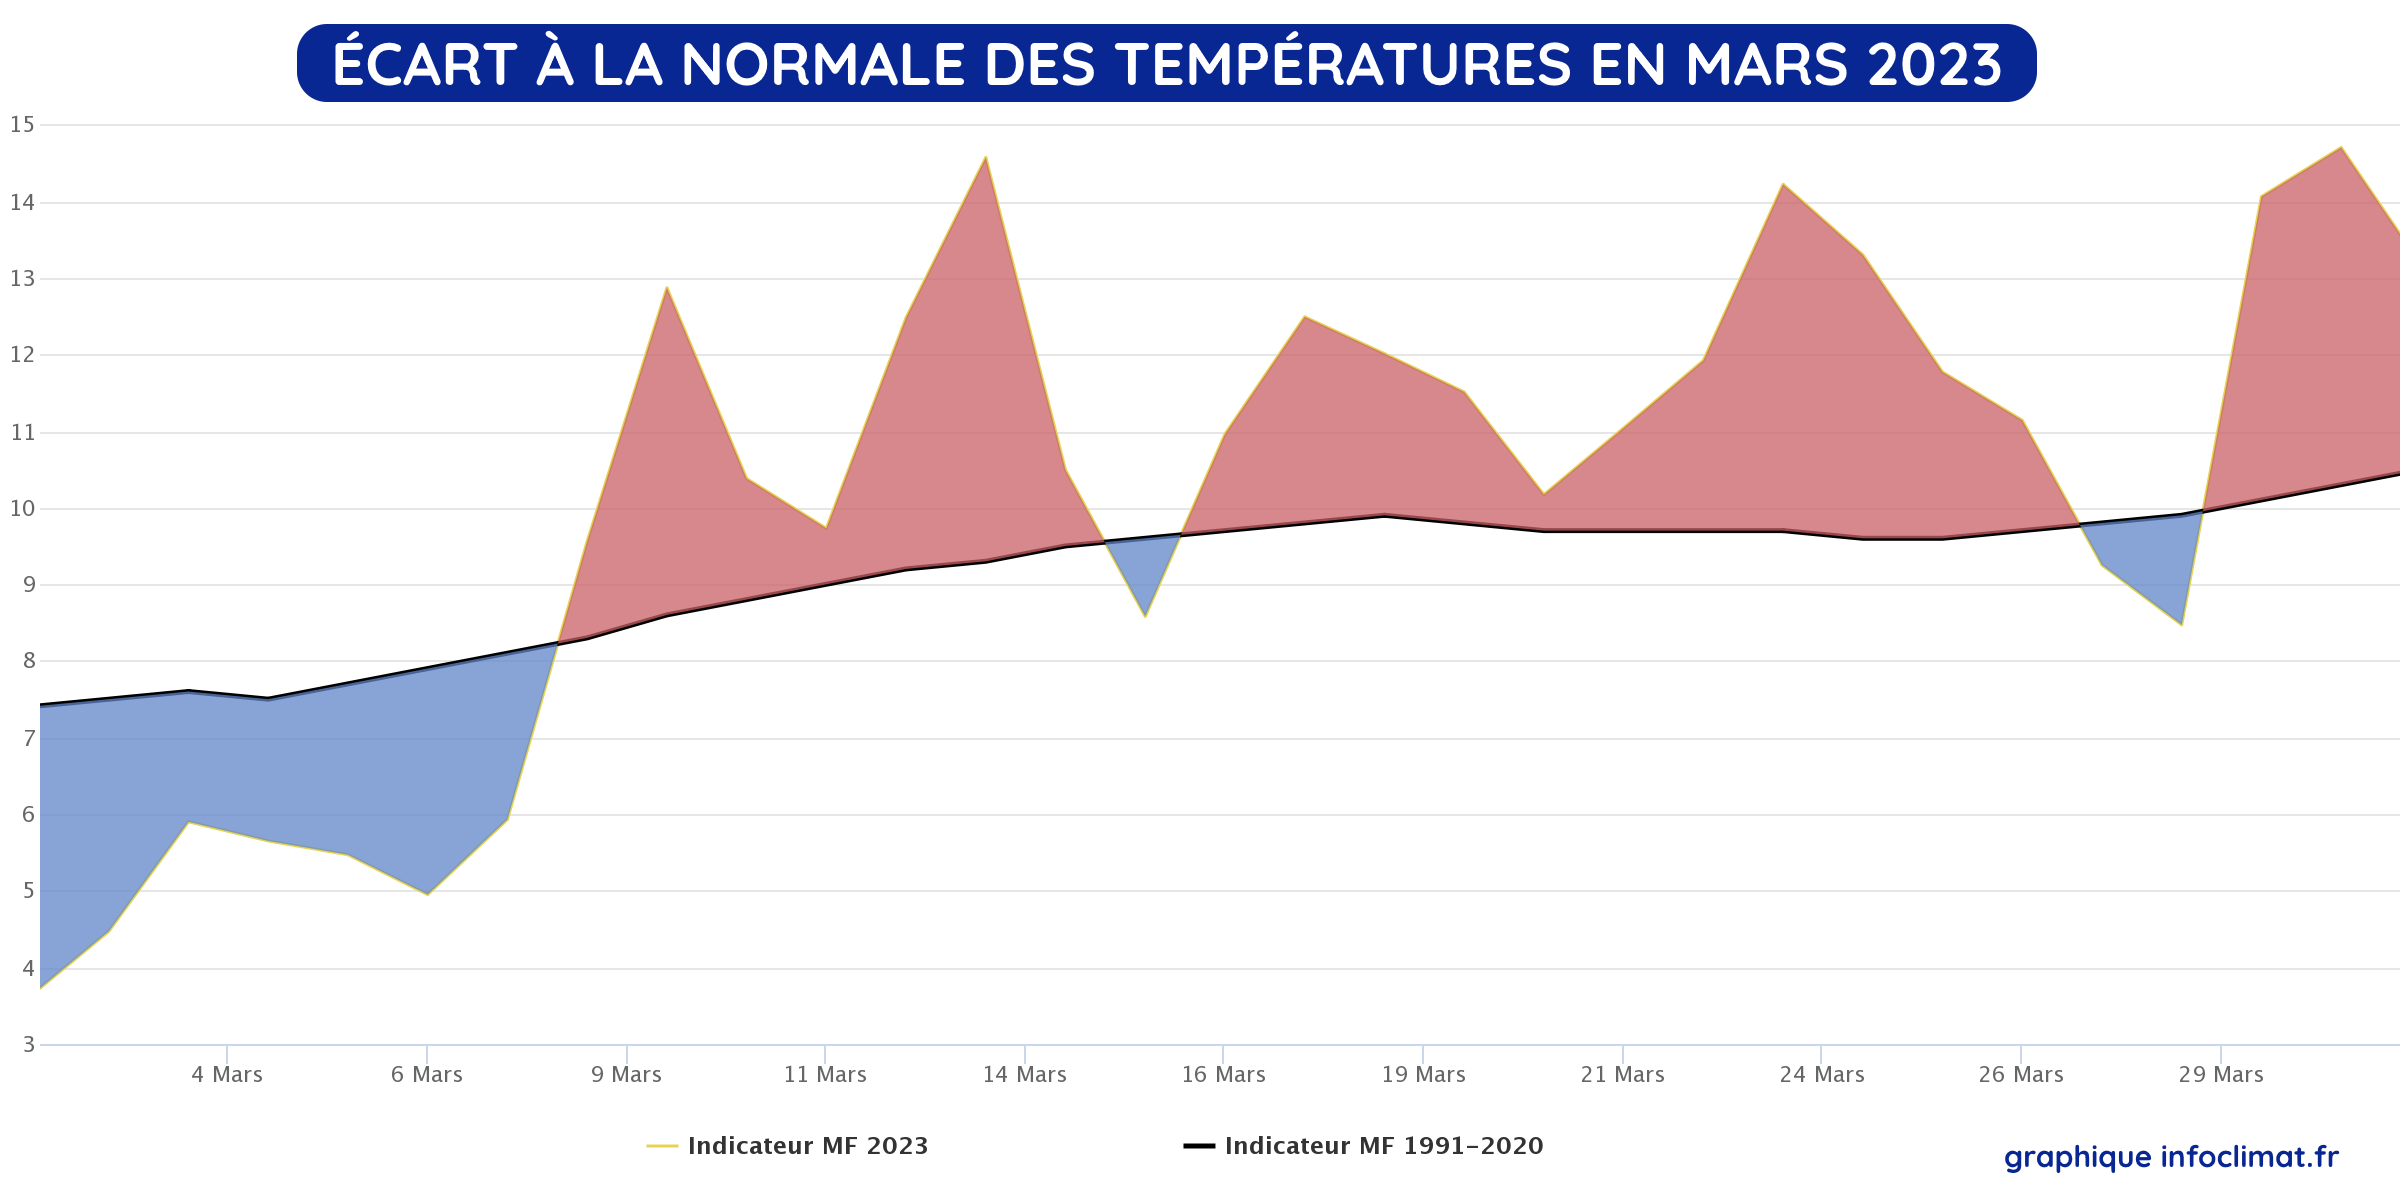 Anomalie thermique en France du 1er au 31 mars 2023